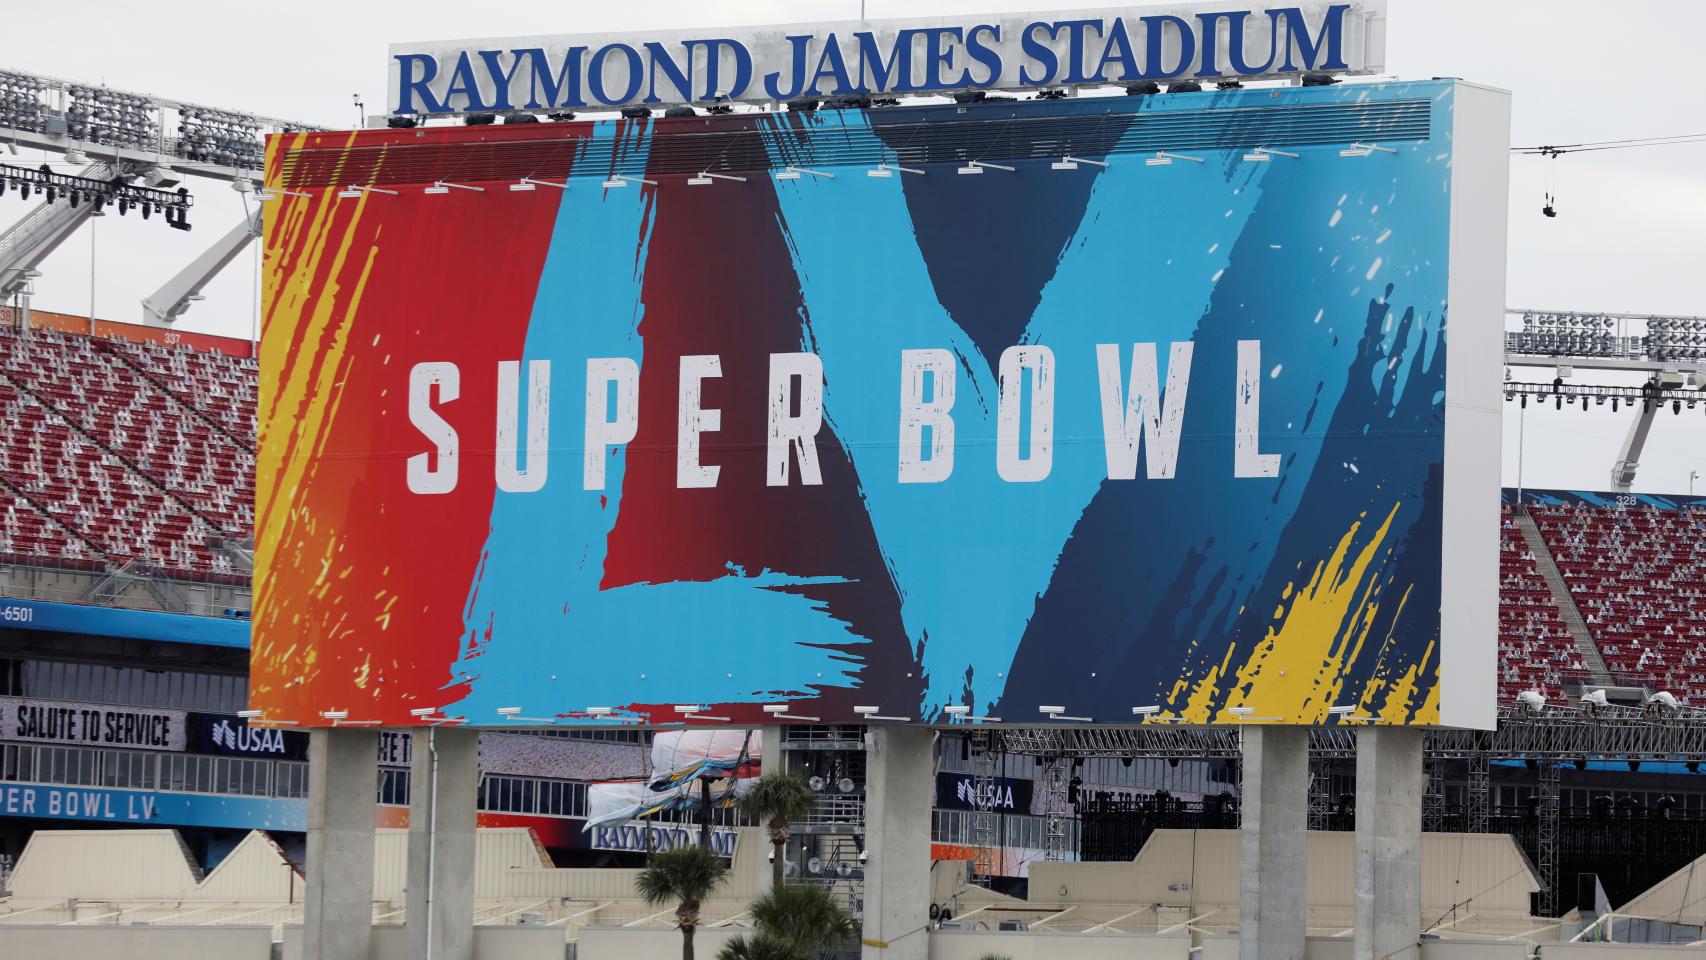 El Raymond James Stadium de Tampa, sede de la Super Bowl LV